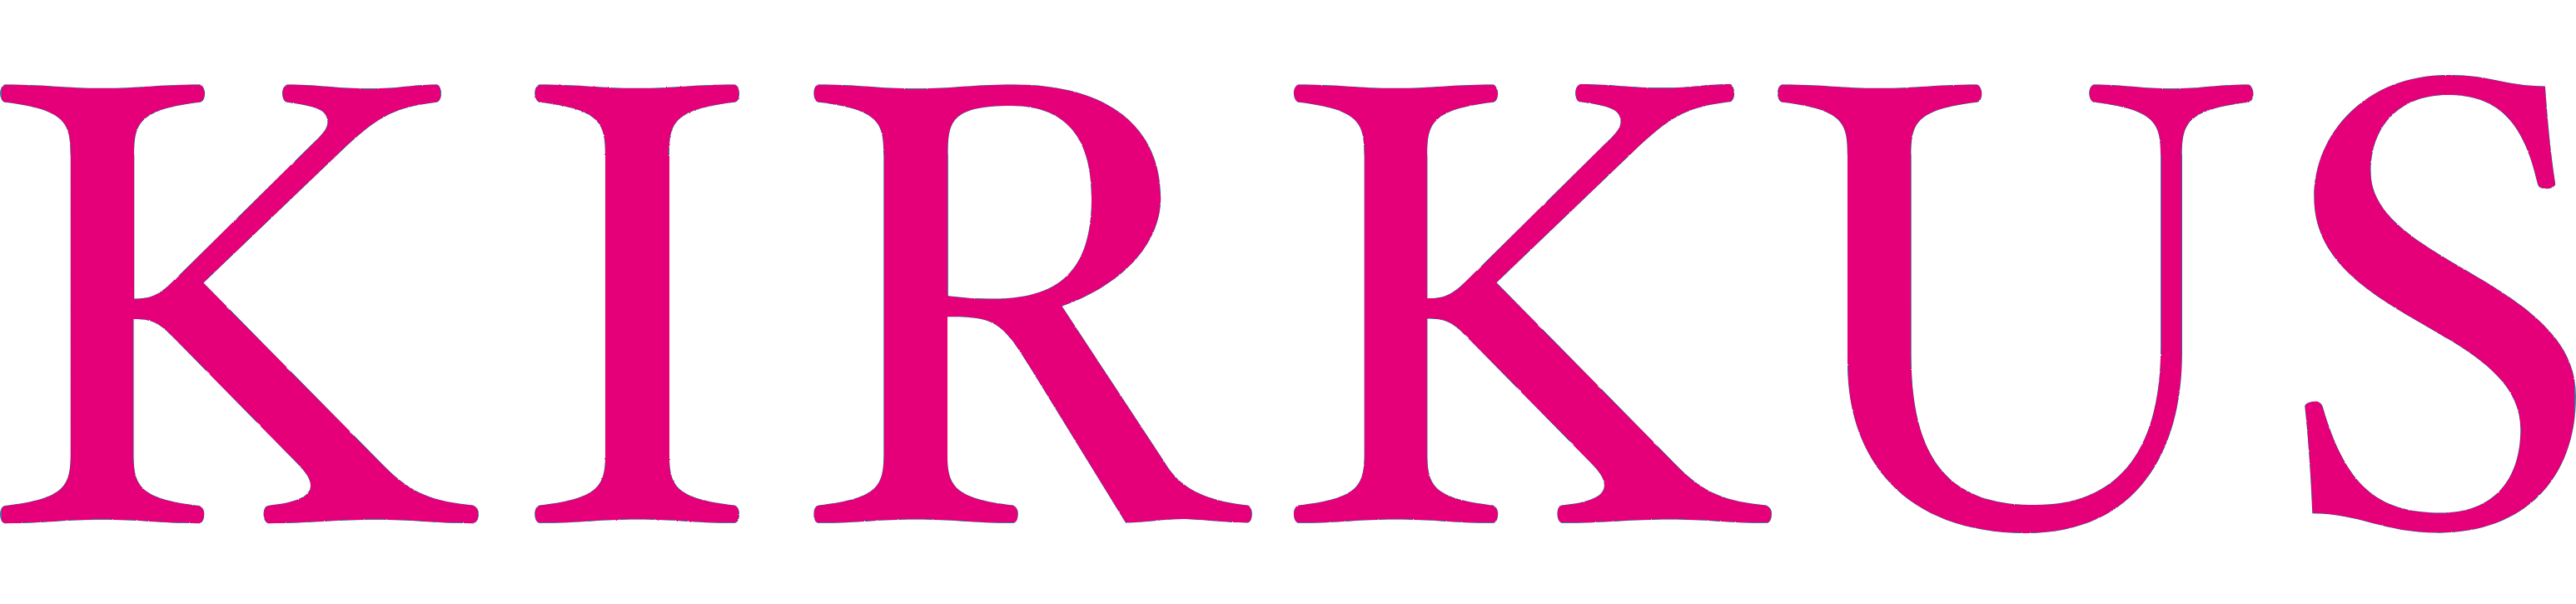 kirkus-pink